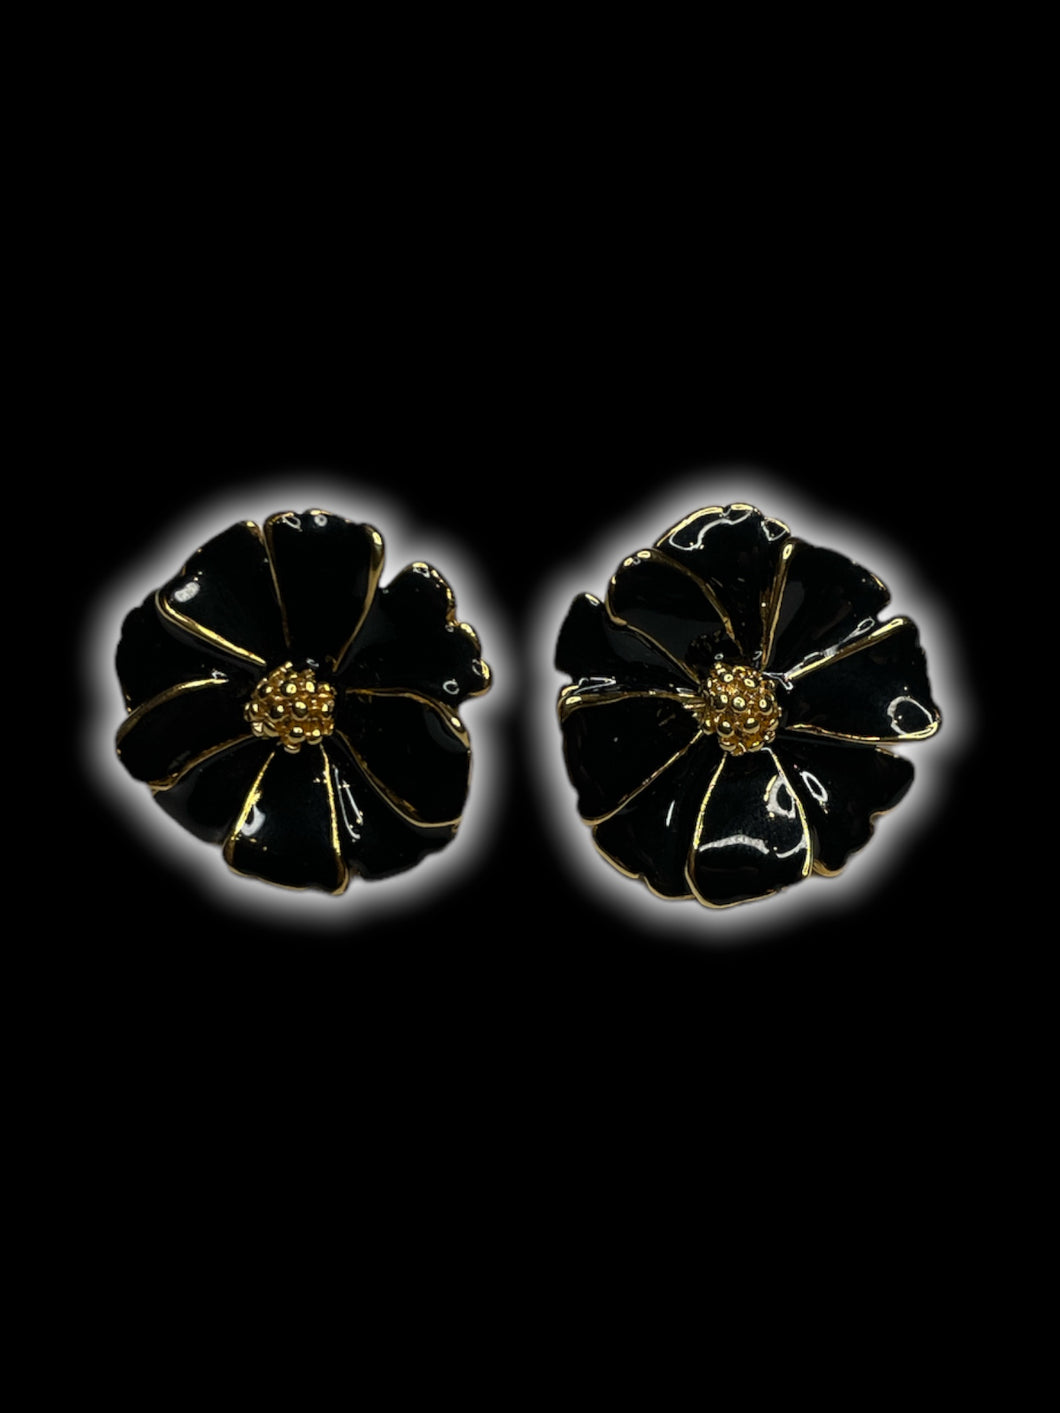 Gold-like & black floral earrings w/ secure lock backs